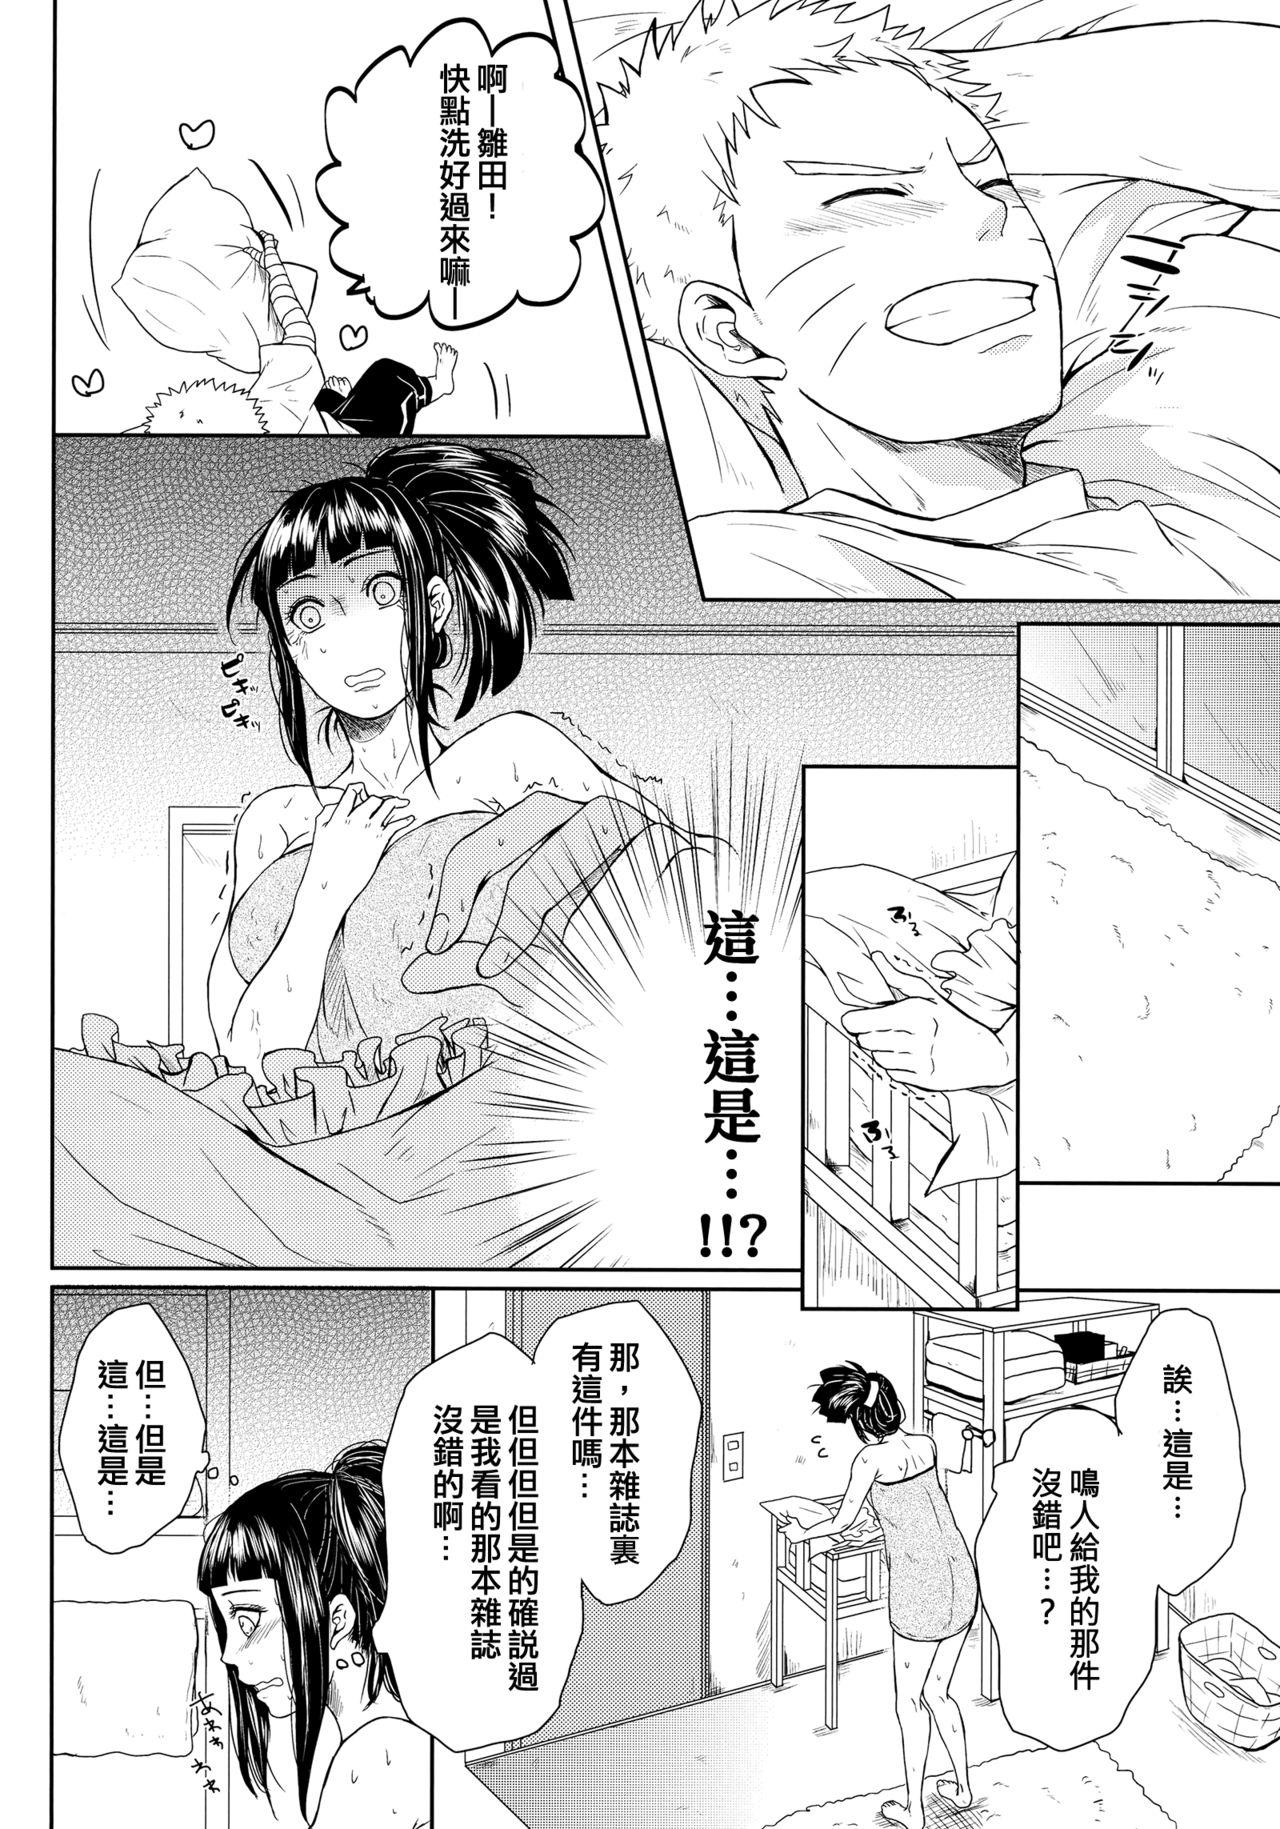 Sextoy NekoPani - Naruto Doublepenetration - Page 12